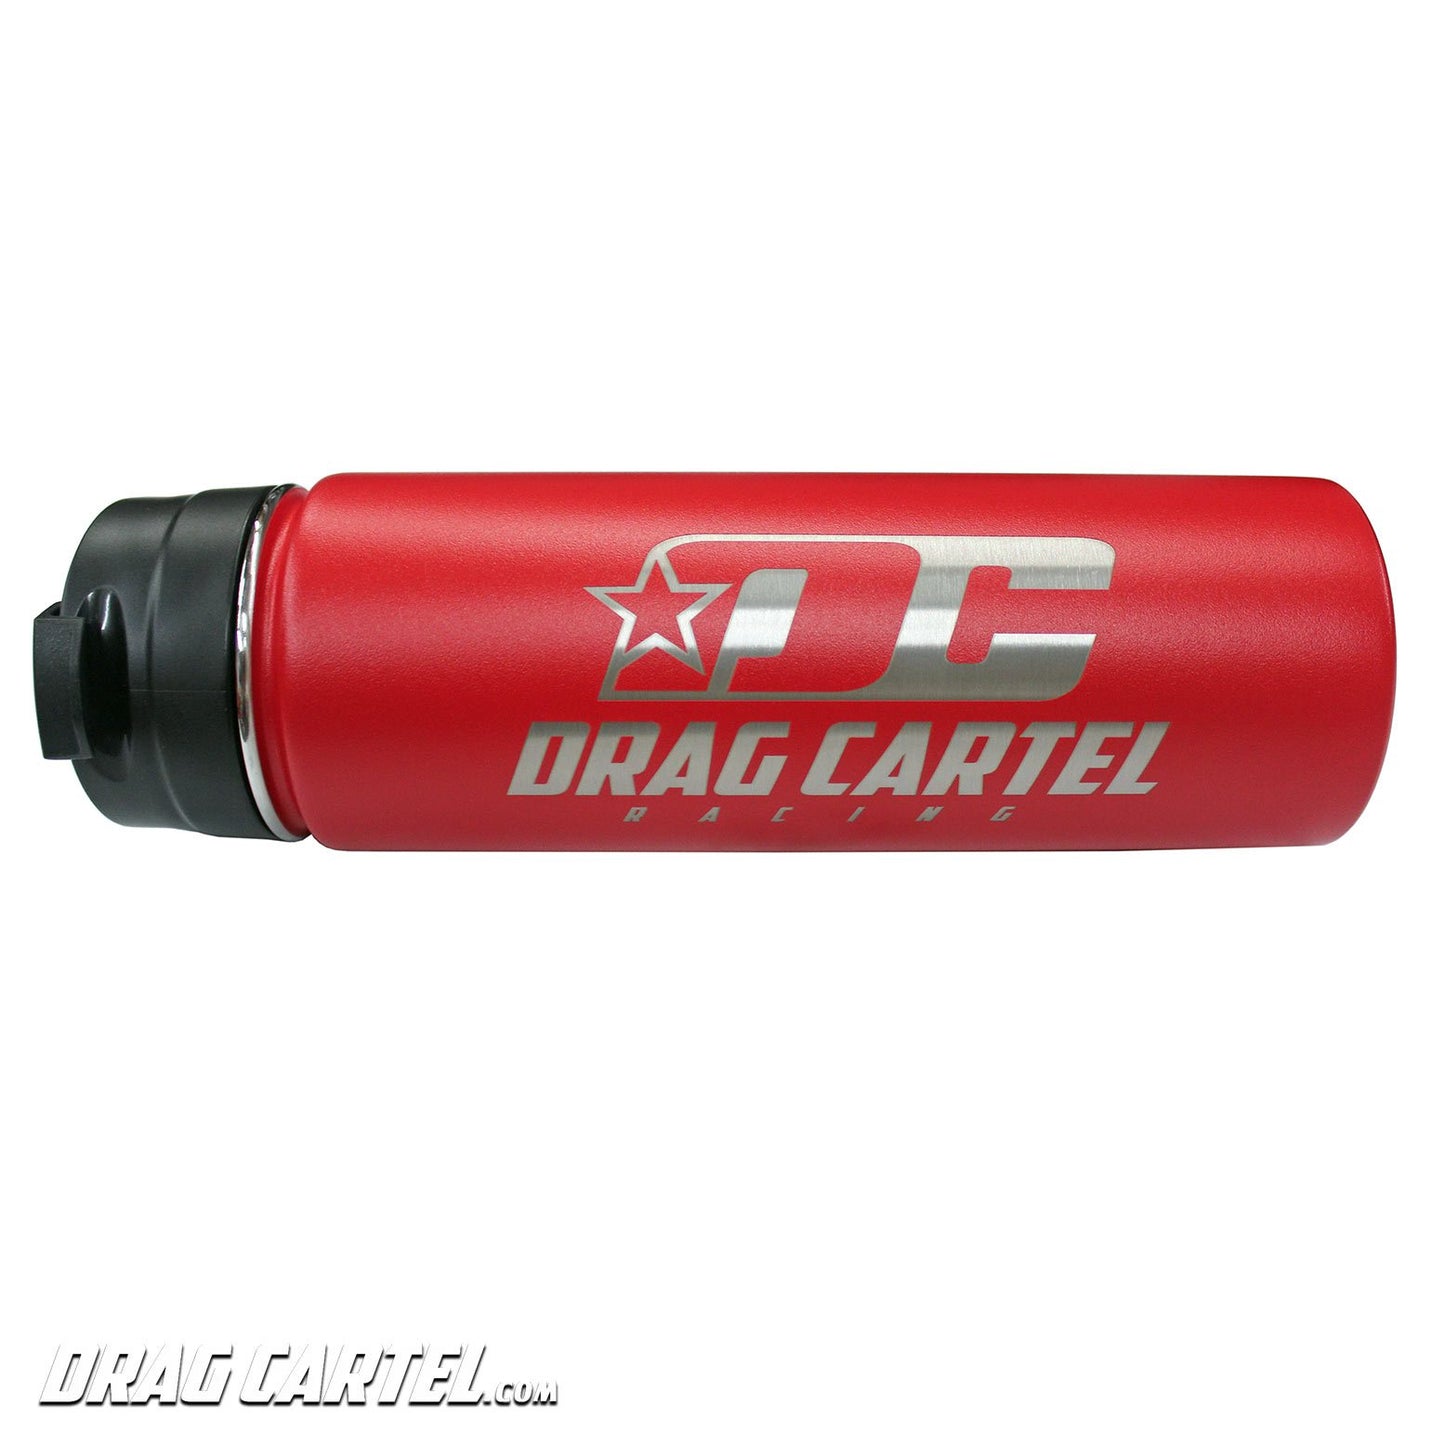 Drag Cartel - Hydro Flask Bottle